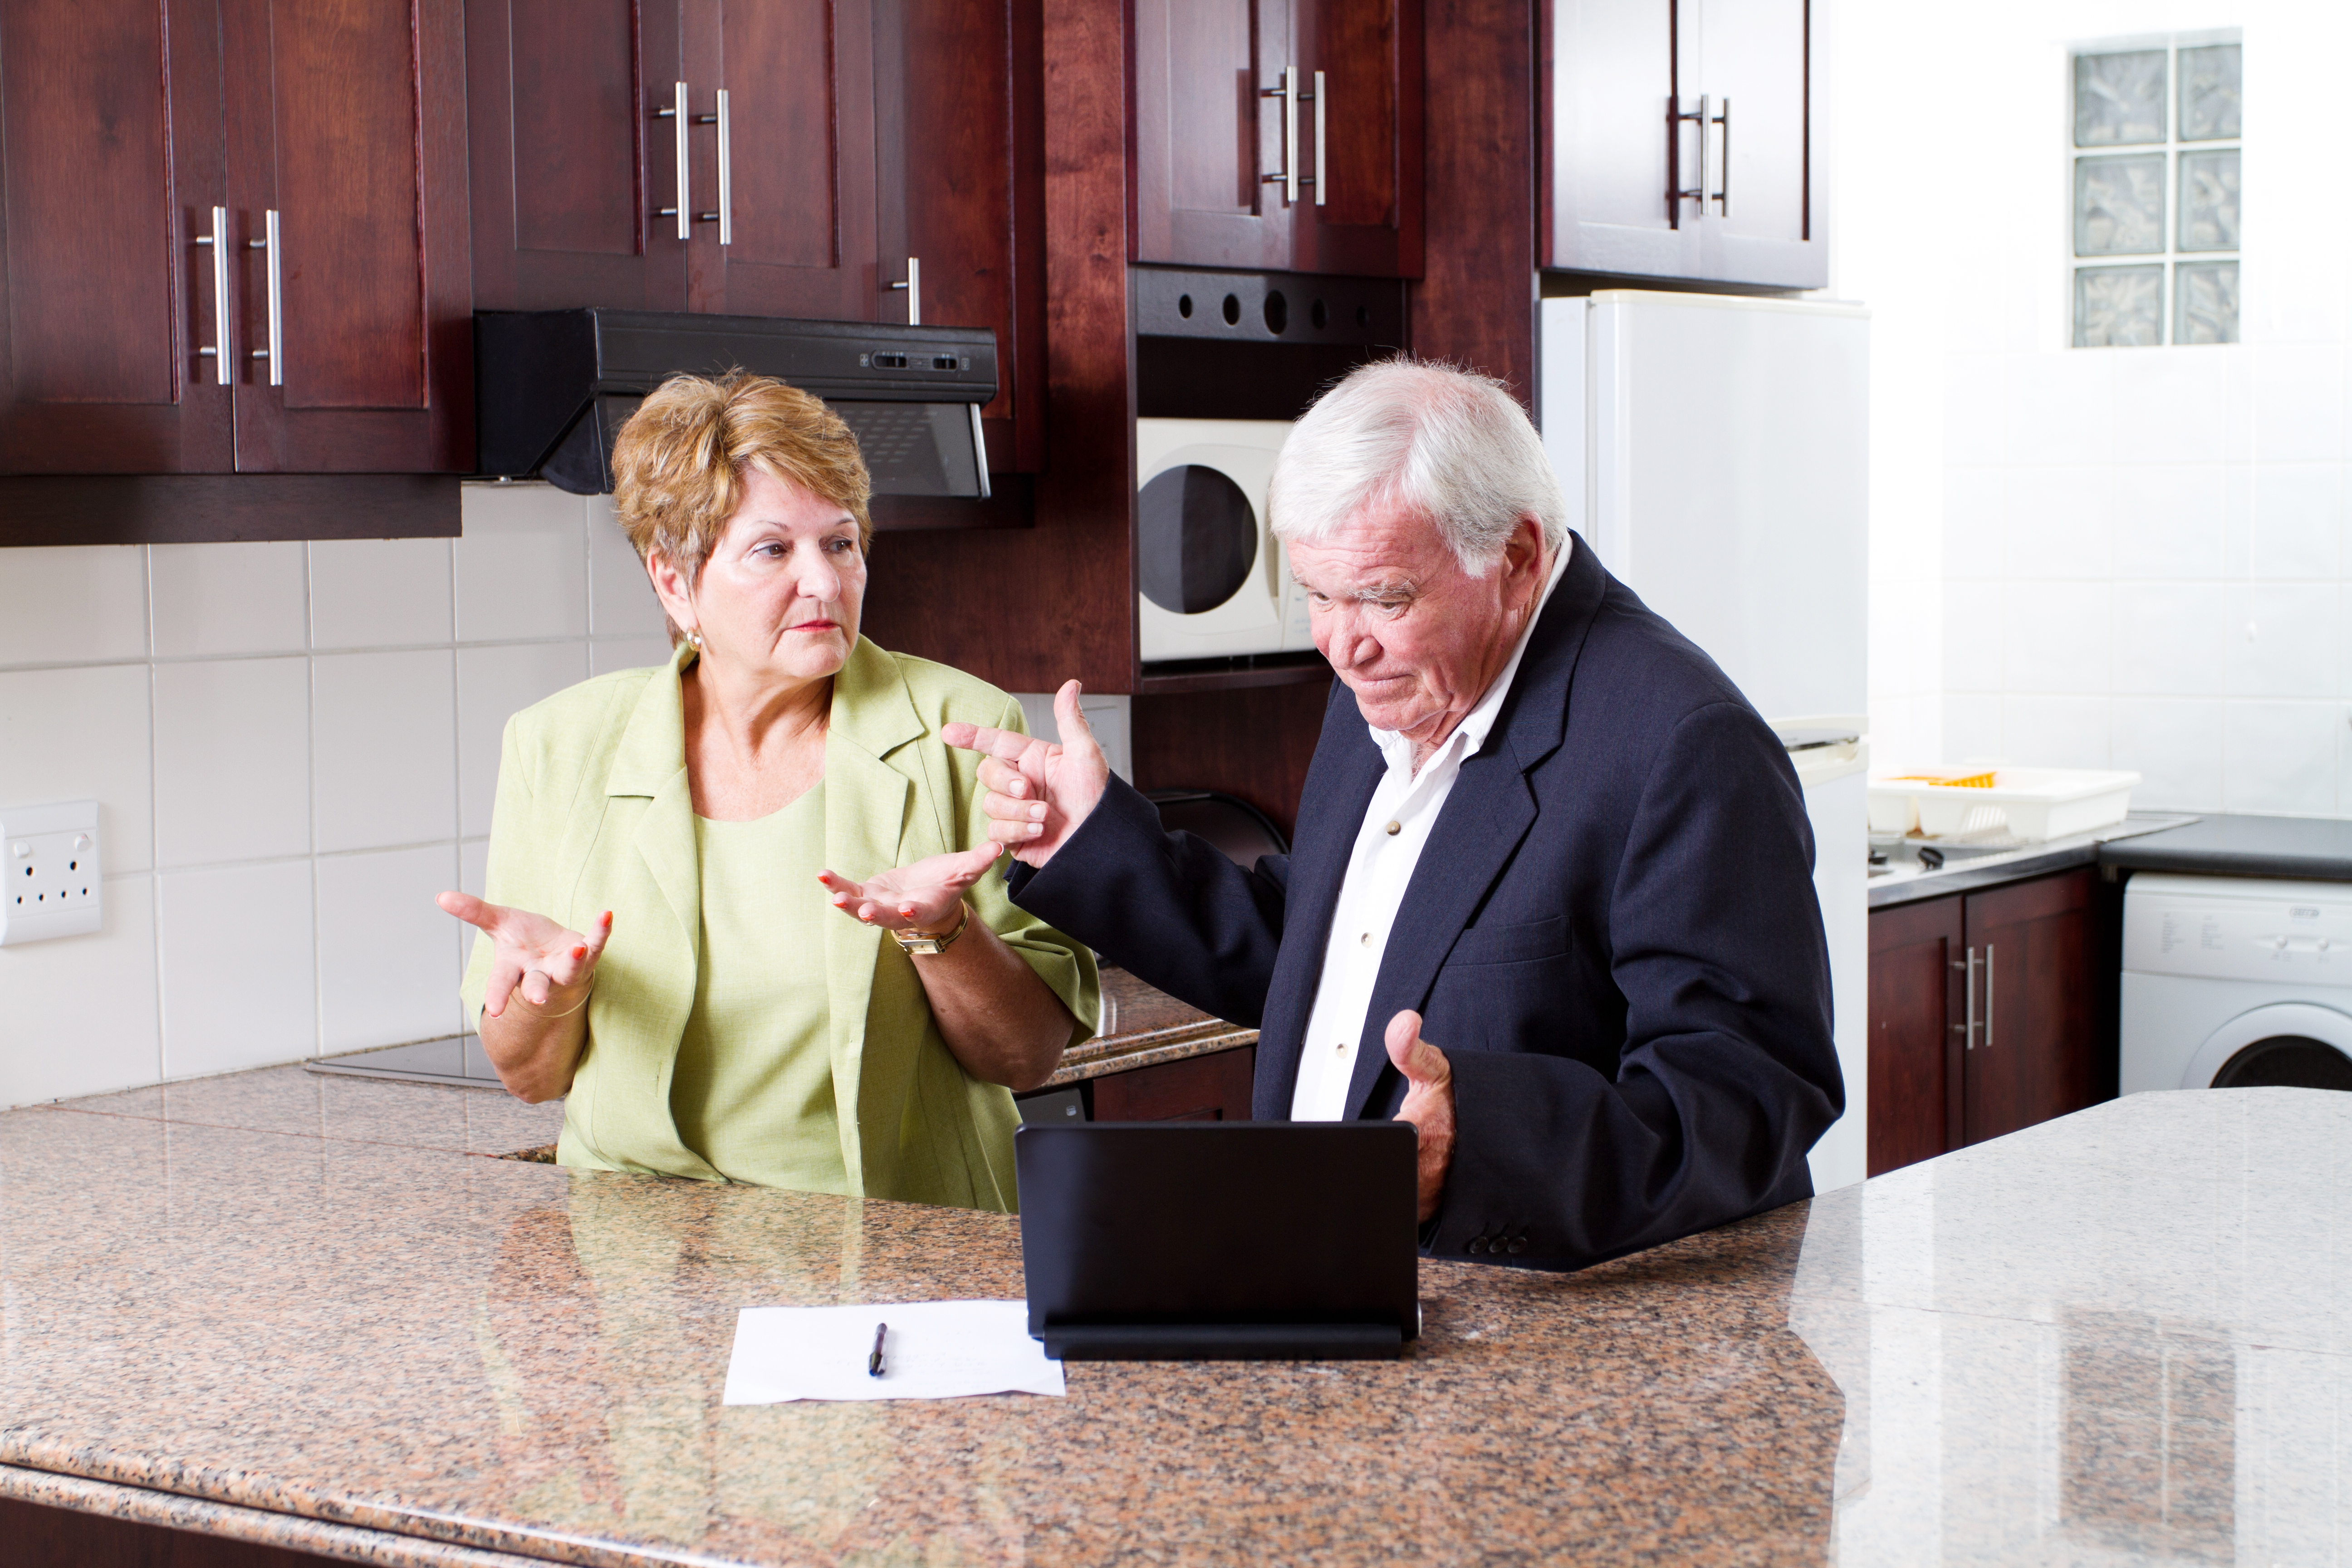 An elderly couple arguing | Source: Shutterstock